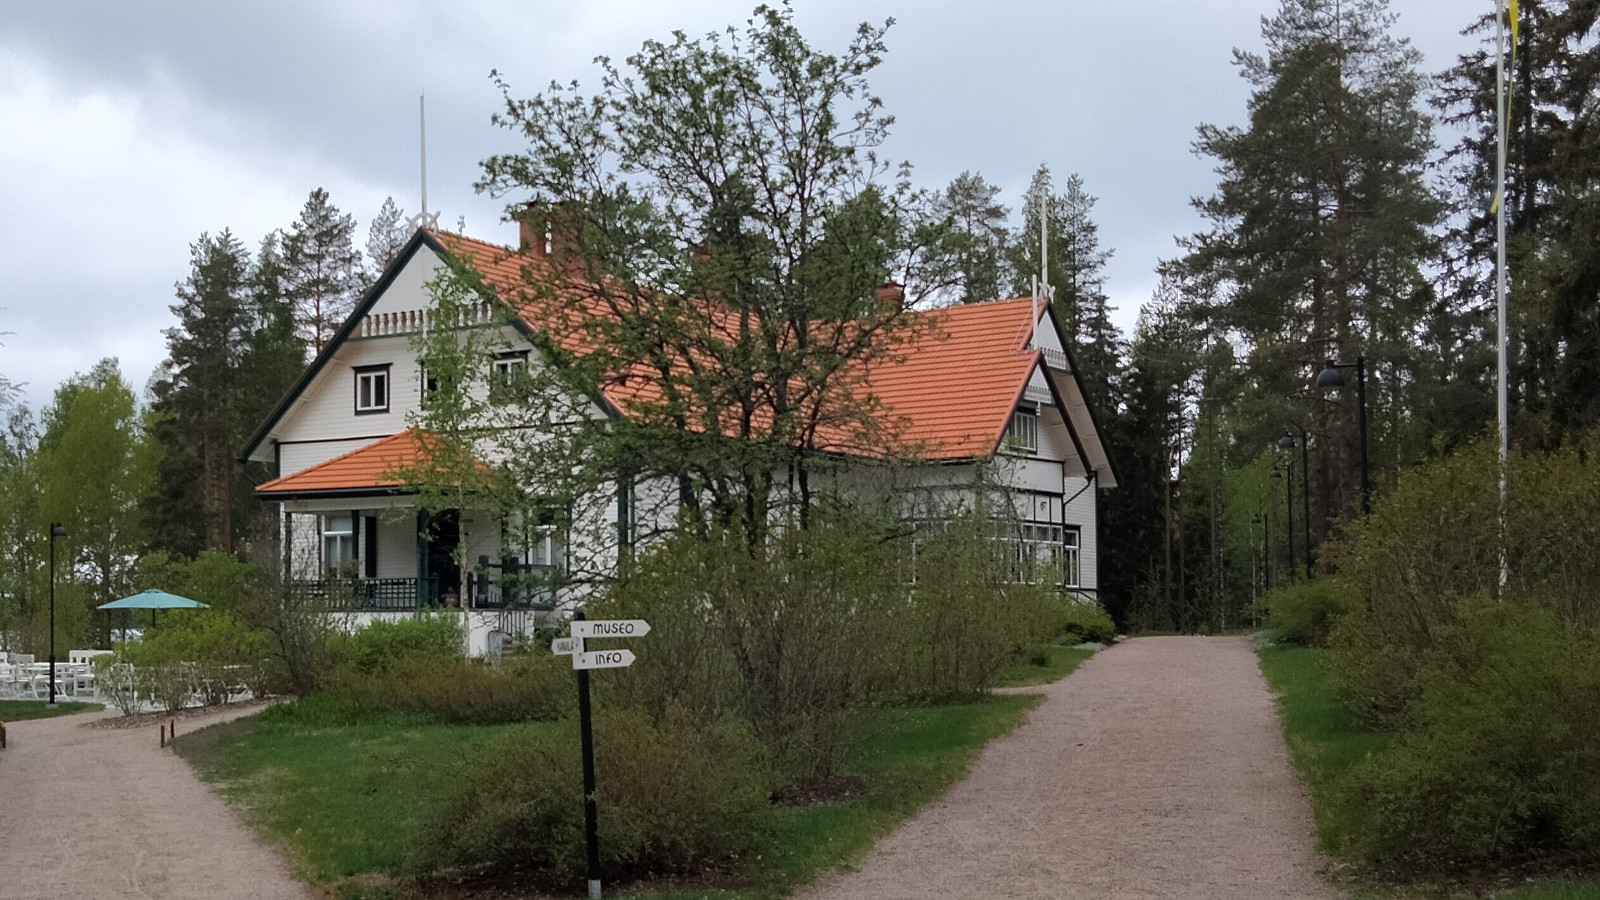 Kuvassa on Kotkaniemen päärakennus, joka näkyy vinosti ja etualalla on pihatiet muovaten nurmikon v-mallisesti taloa kohti.  Talo on puiden katveessa ja on väriltään vaalea vihrein reunalaudoituksin.